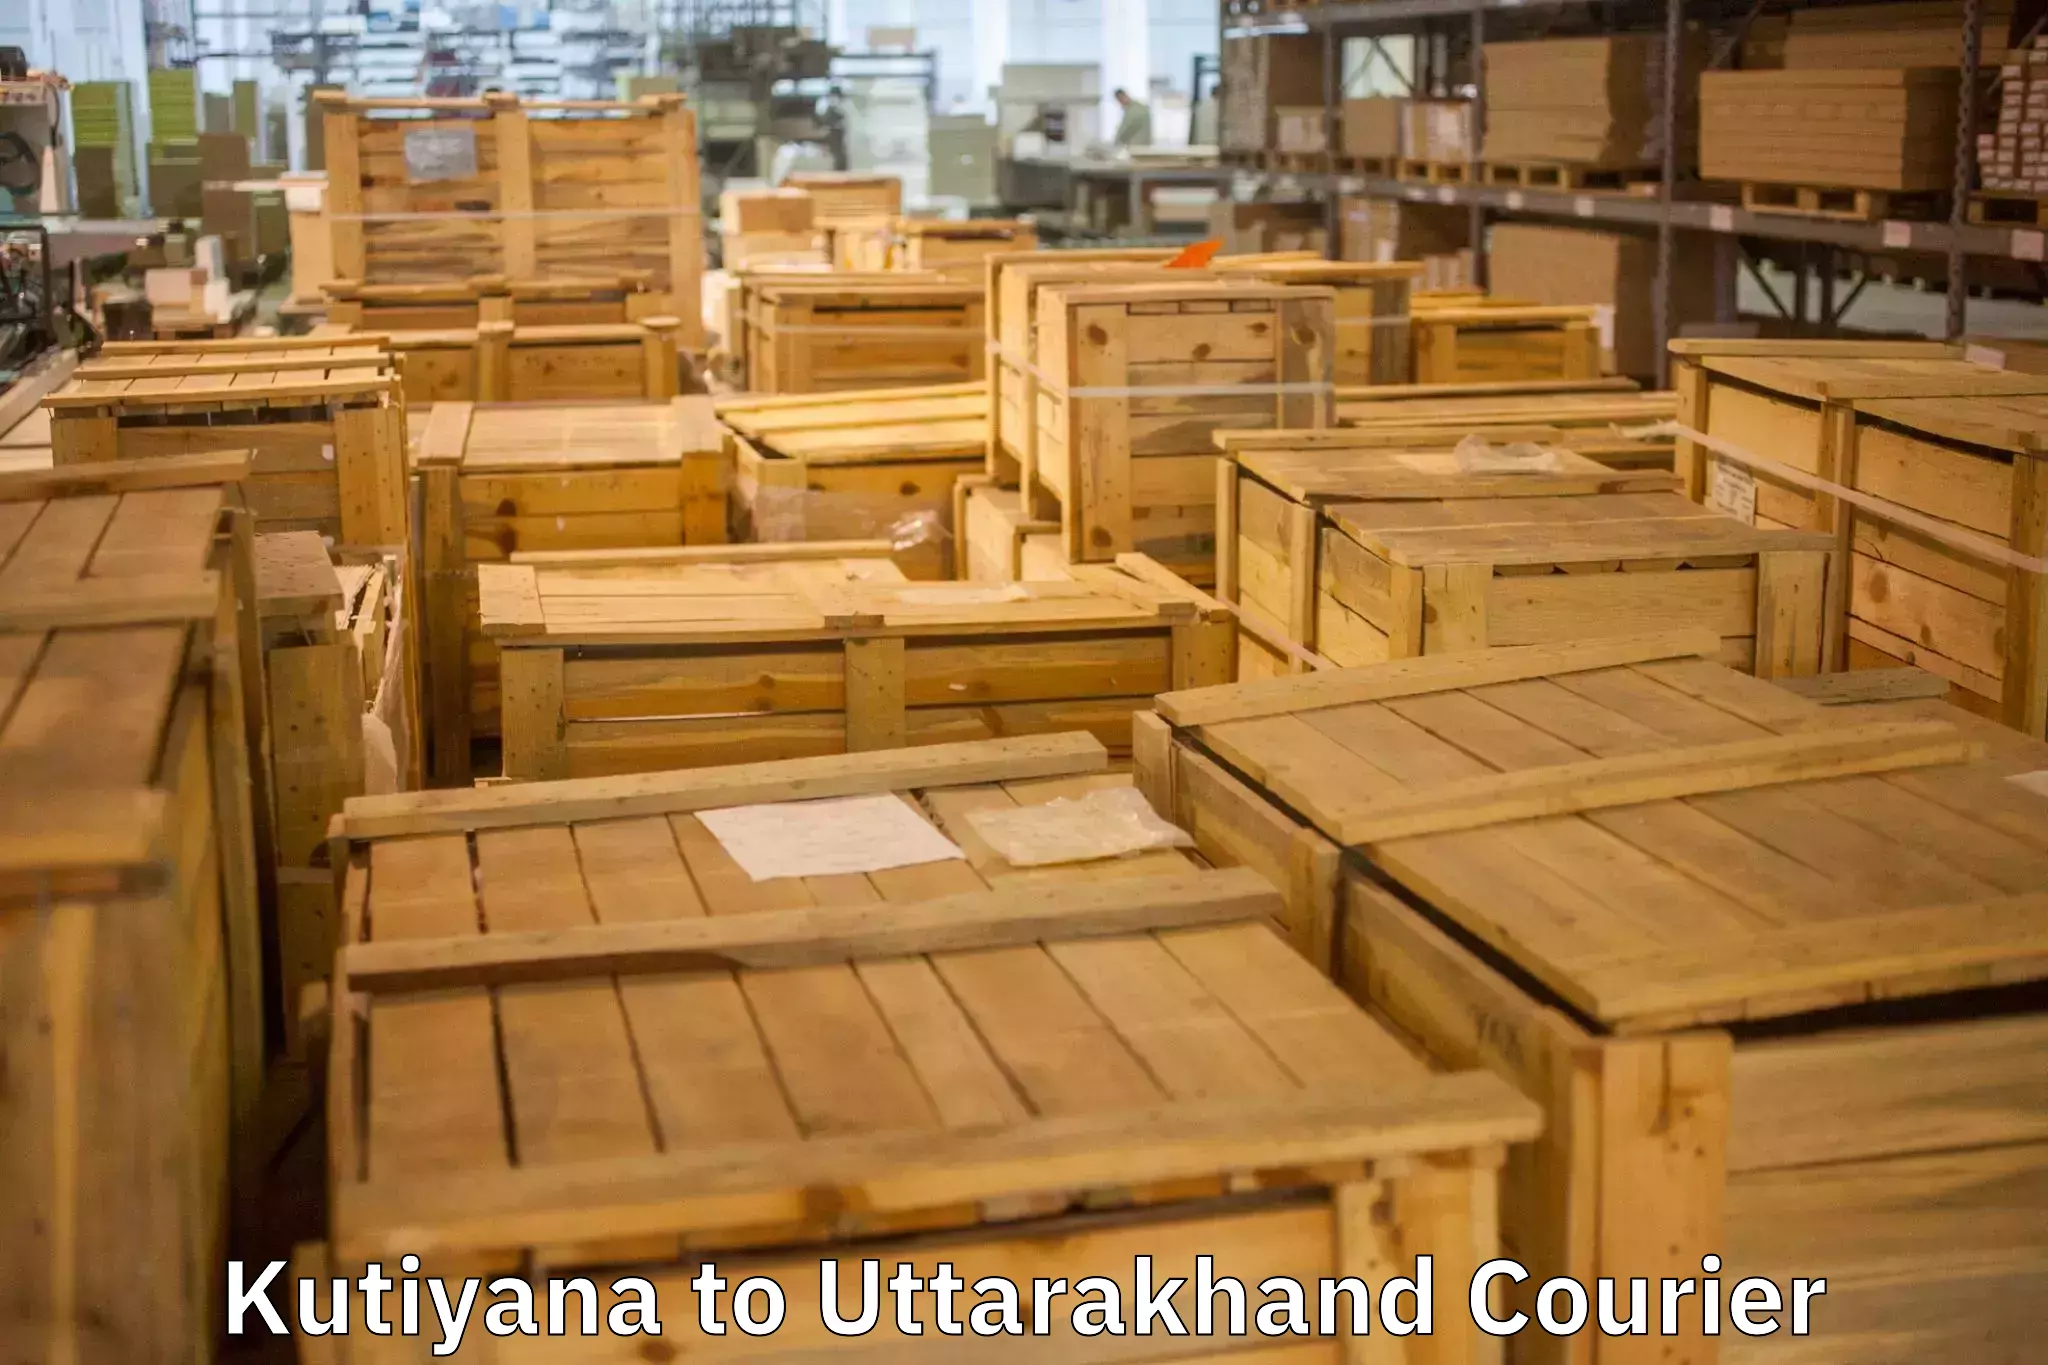 Furniture moving solutions Kutiyana to Uttarakhand